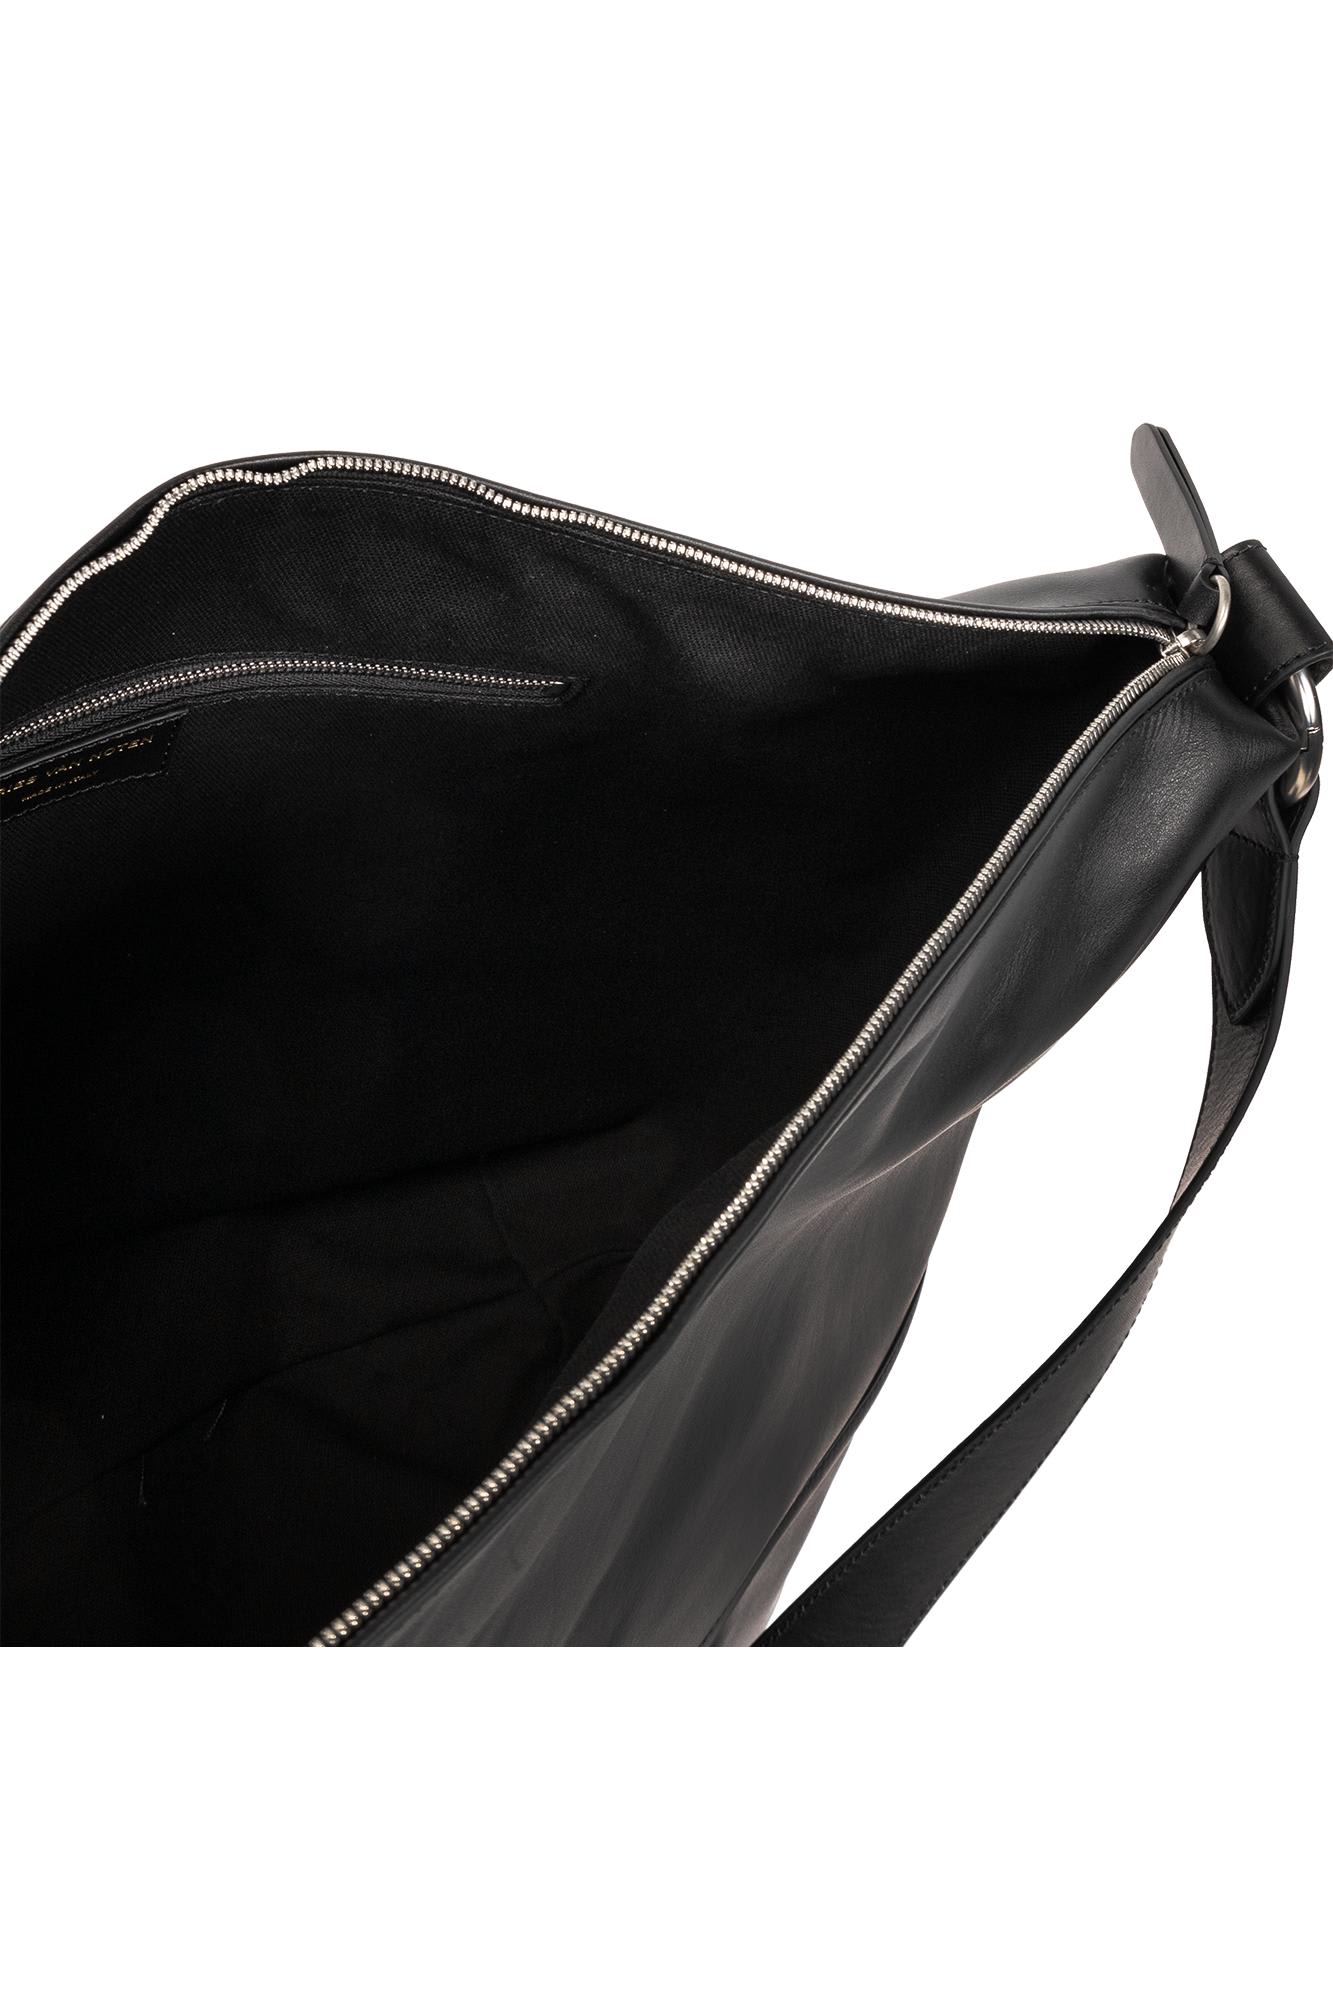 Shop Dries Van Noten Travel Bag In Black